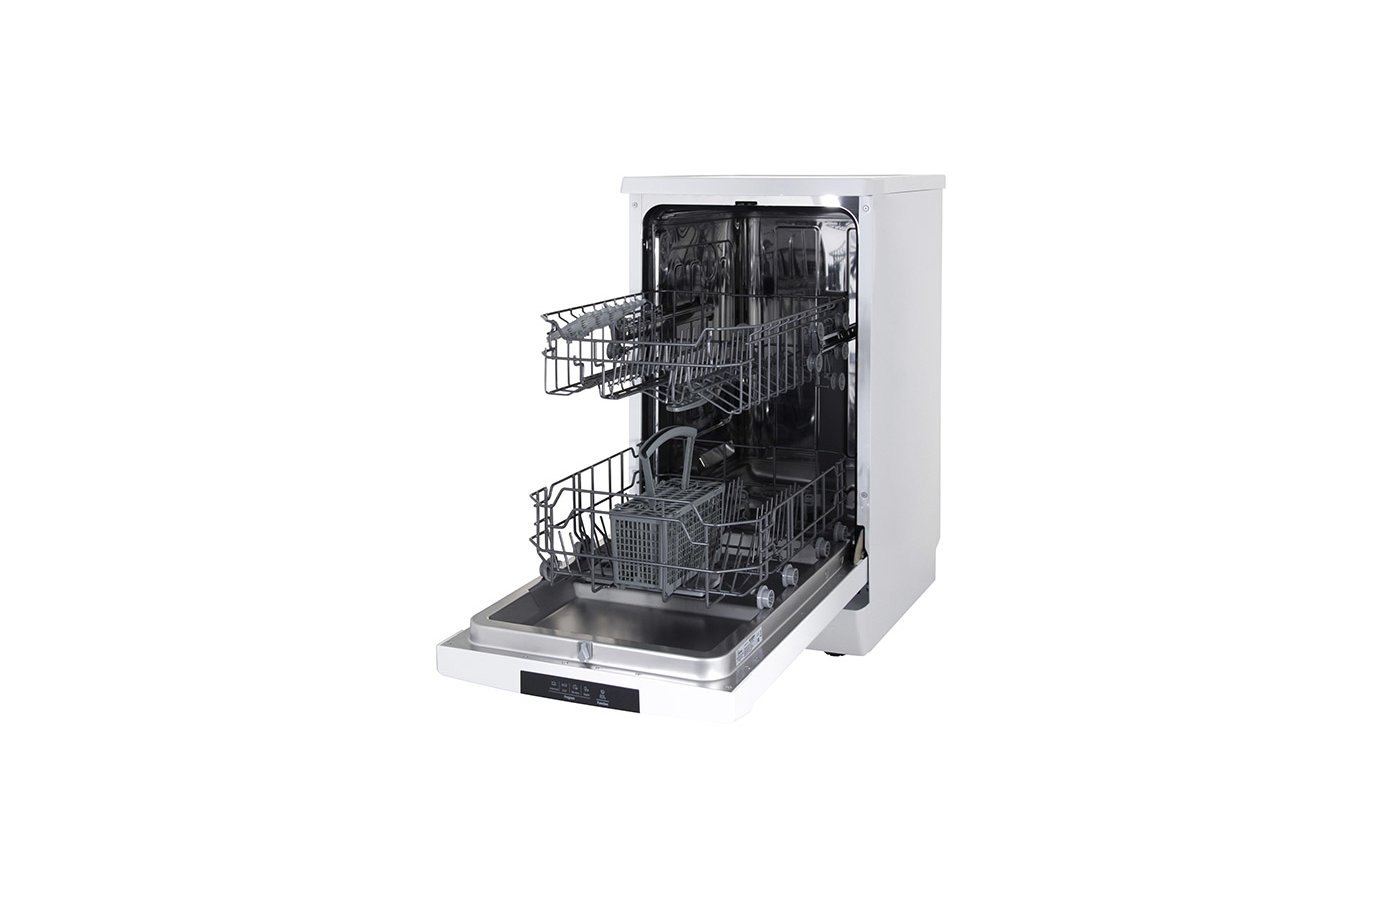 Посудомоечная машина midea mfd45s100w обзор - портал об оборудовании, автоматизации и по